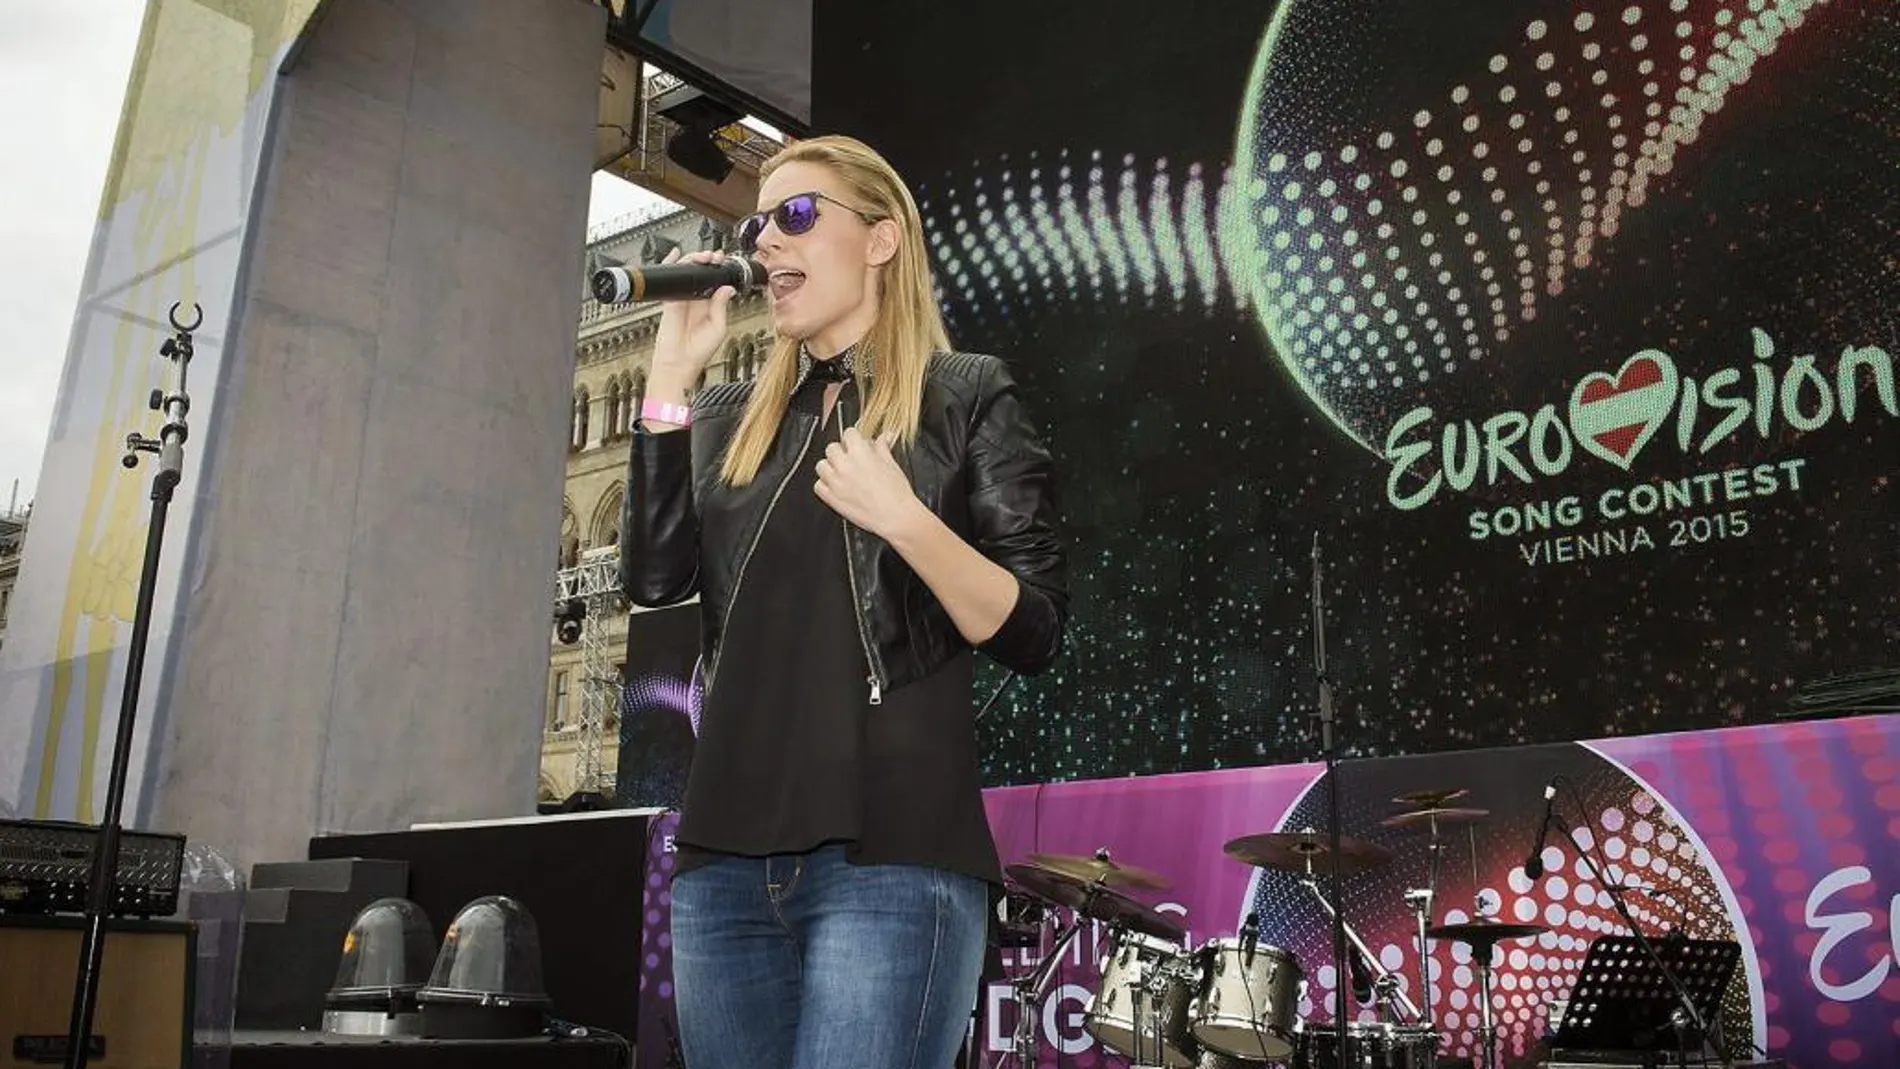 La cantante Edurne, representante española en el Festival de Eurovisión 2015, realiza las pruebas de sonido en el Eurovision Village